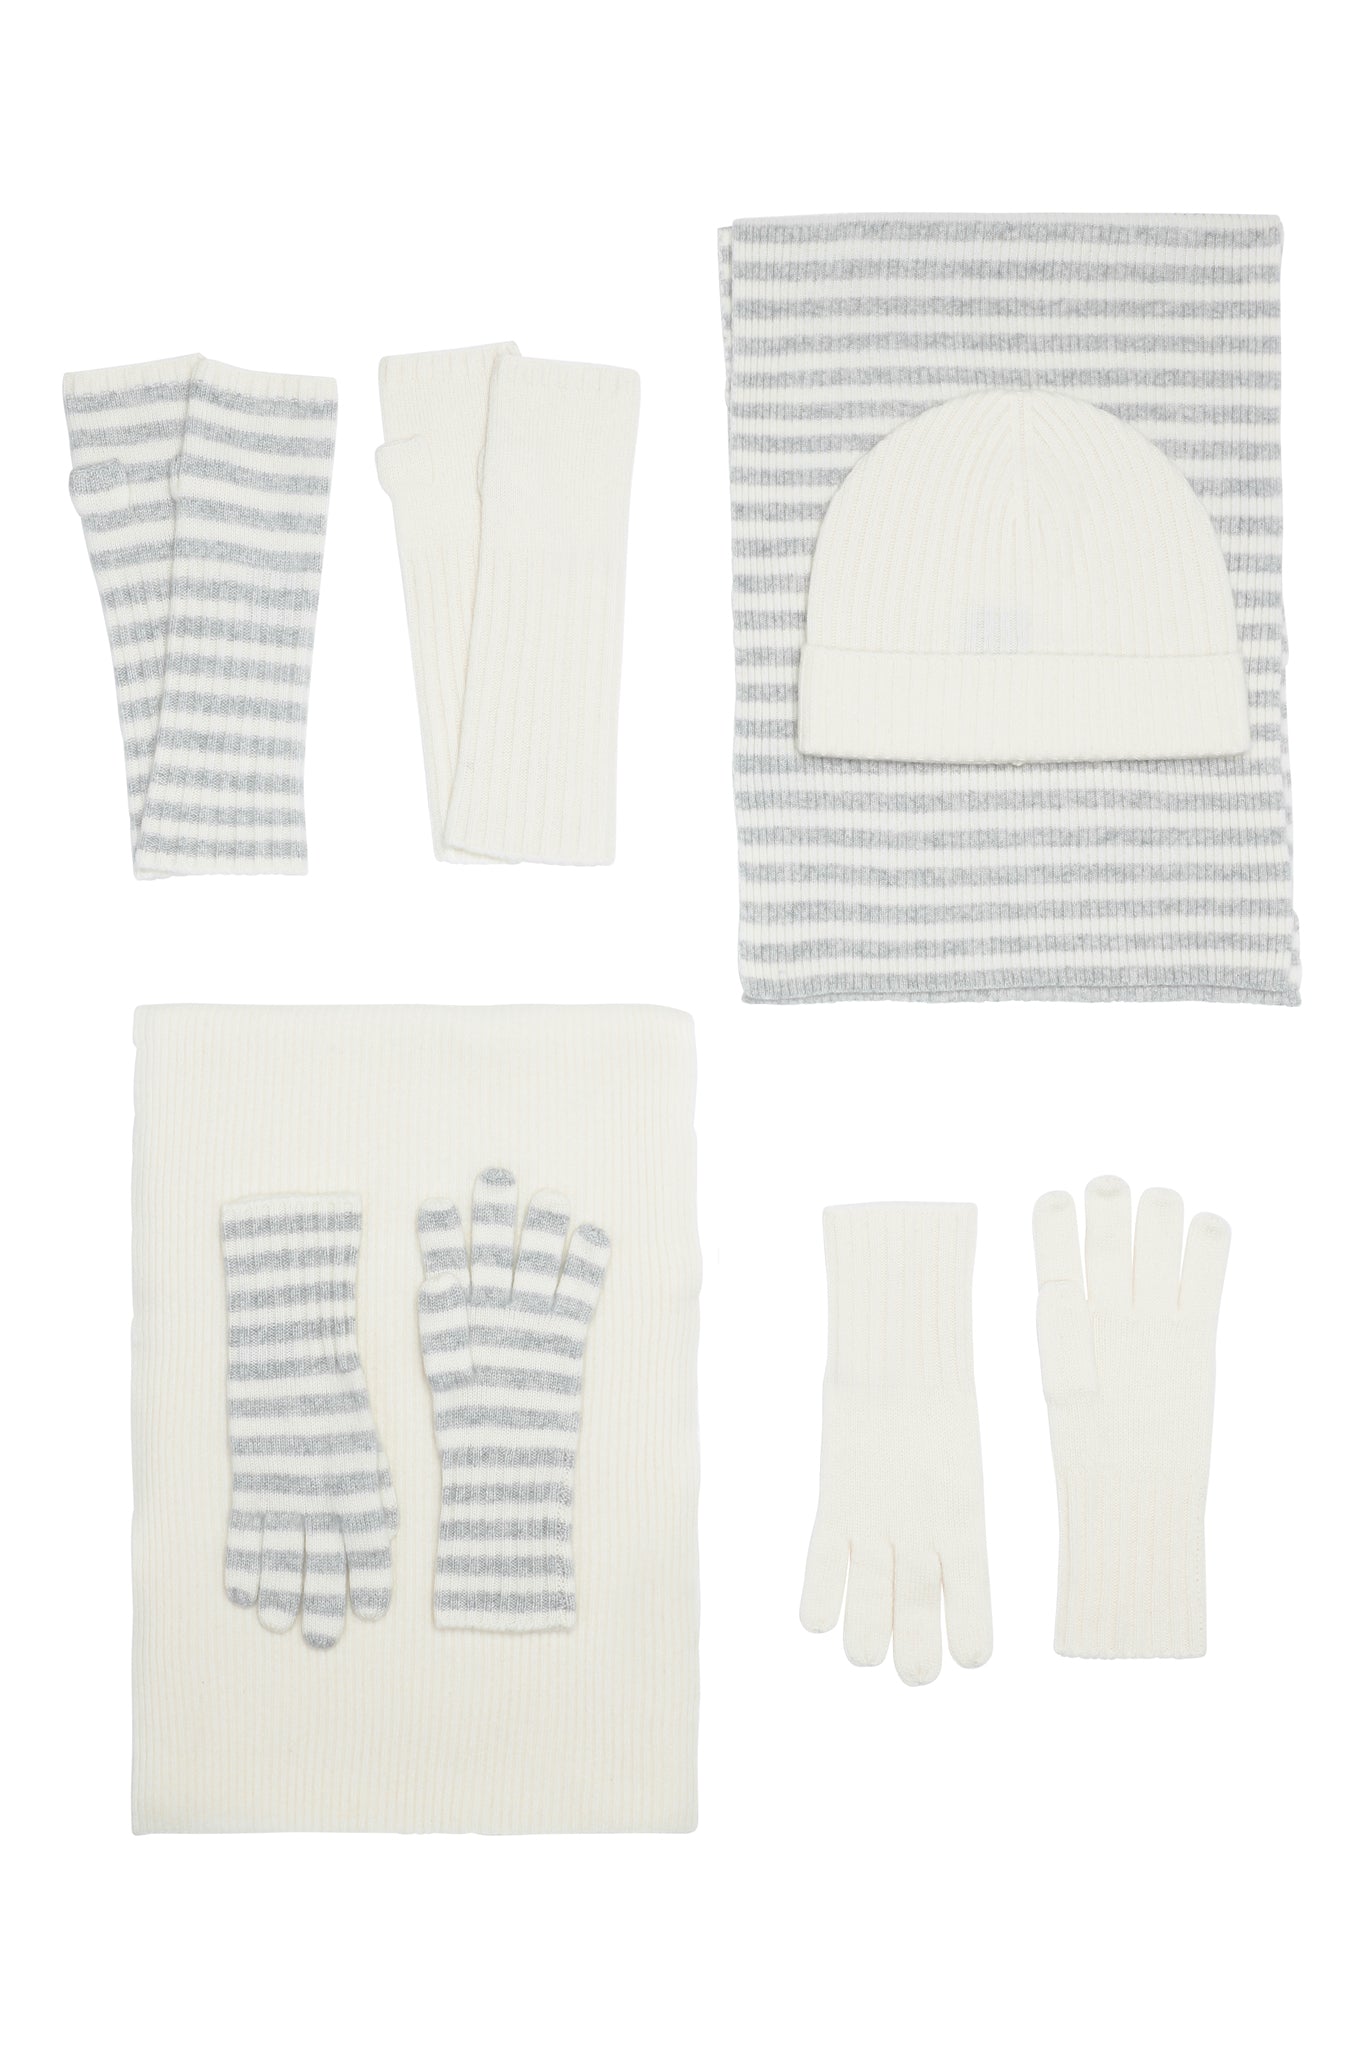 Robin - håndledsvarmere (fingerløse vanter) i strikket cashmere - Lysegrå og Hvid